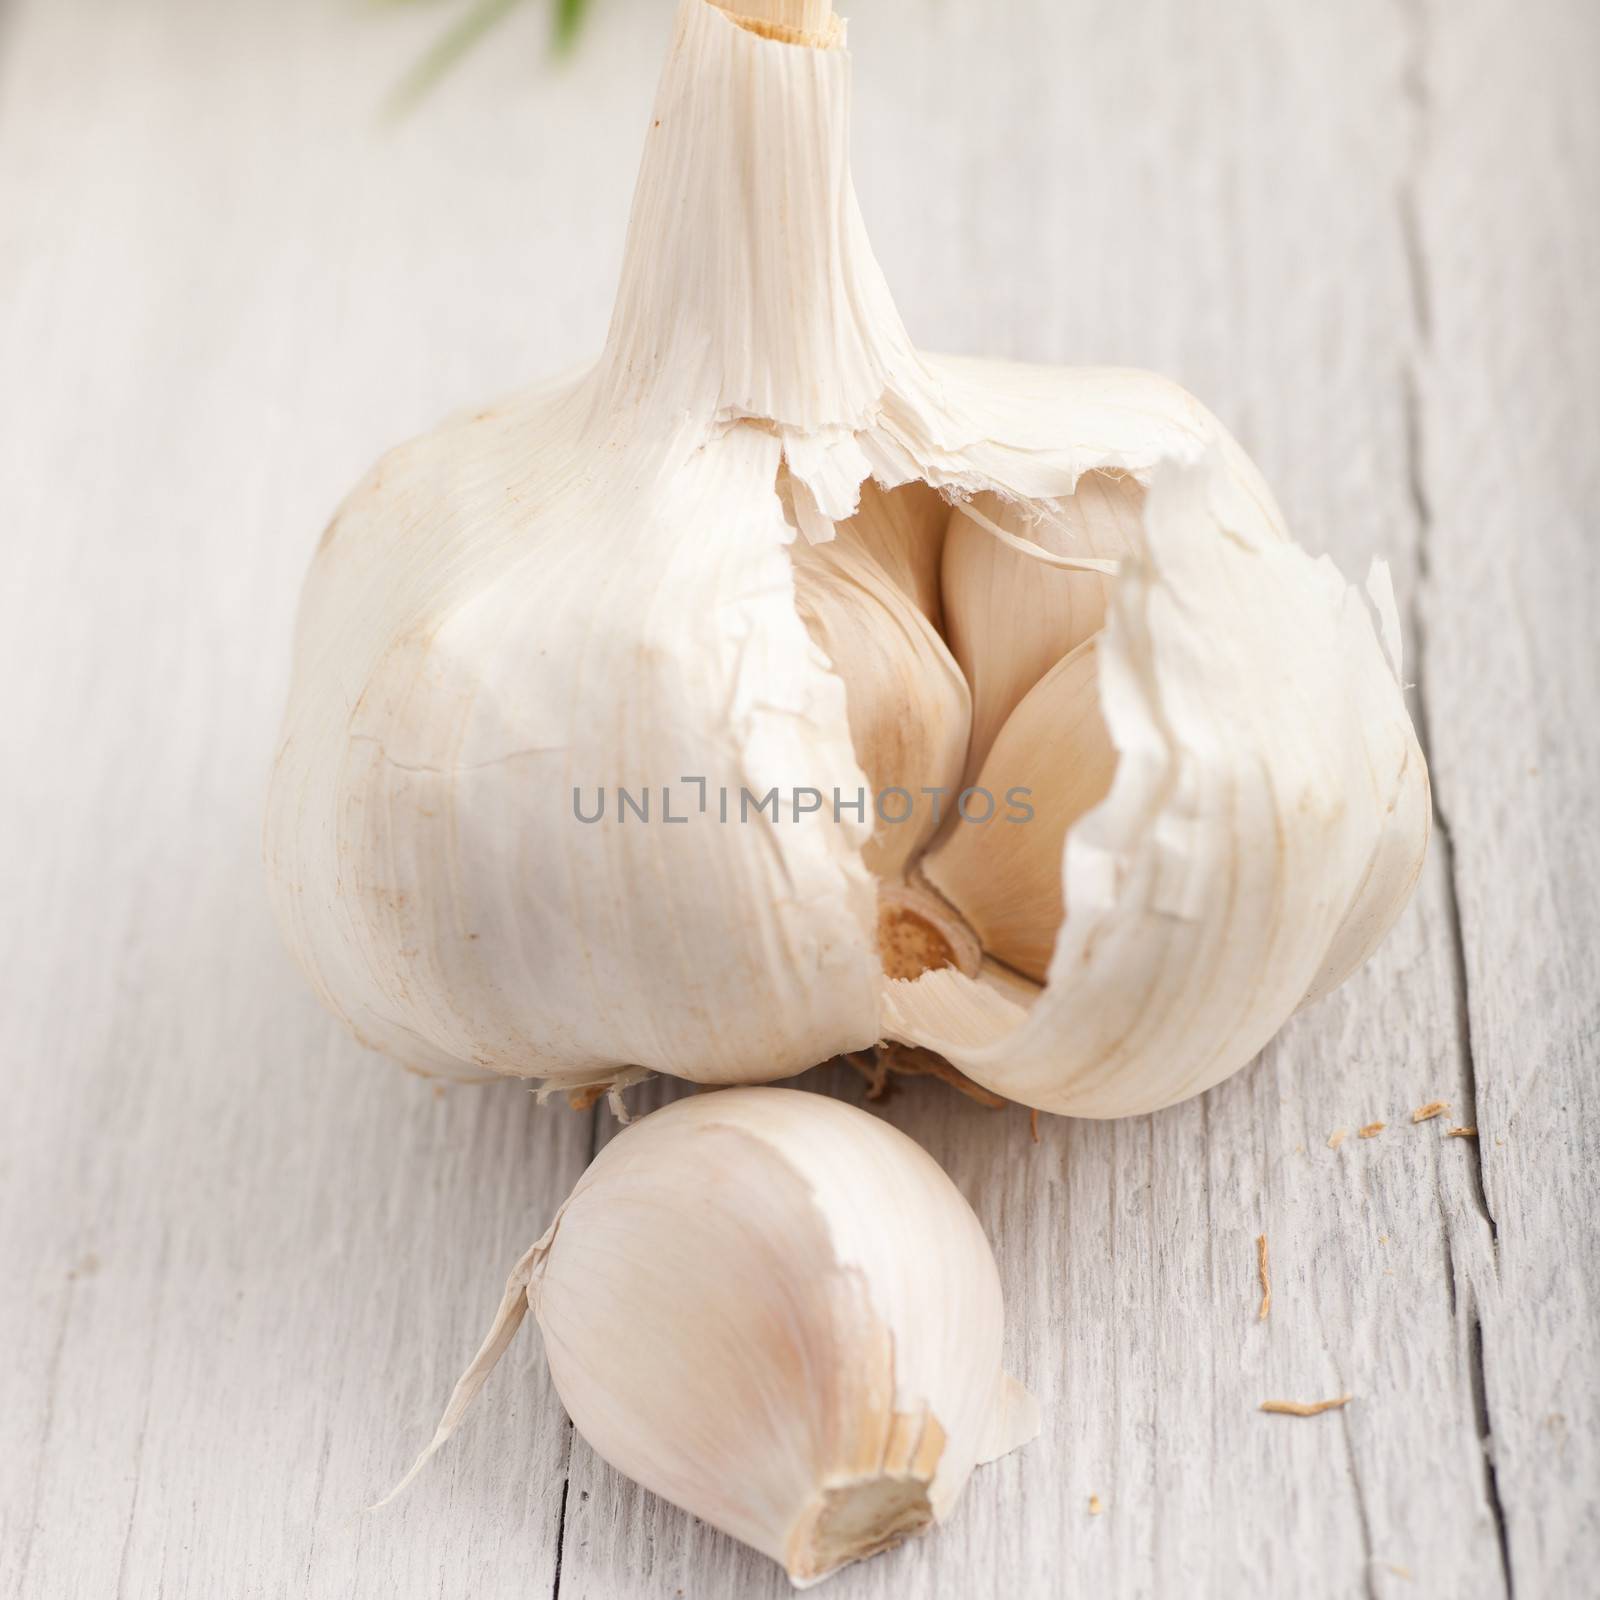 Garlic clove and bulb by Farina6000